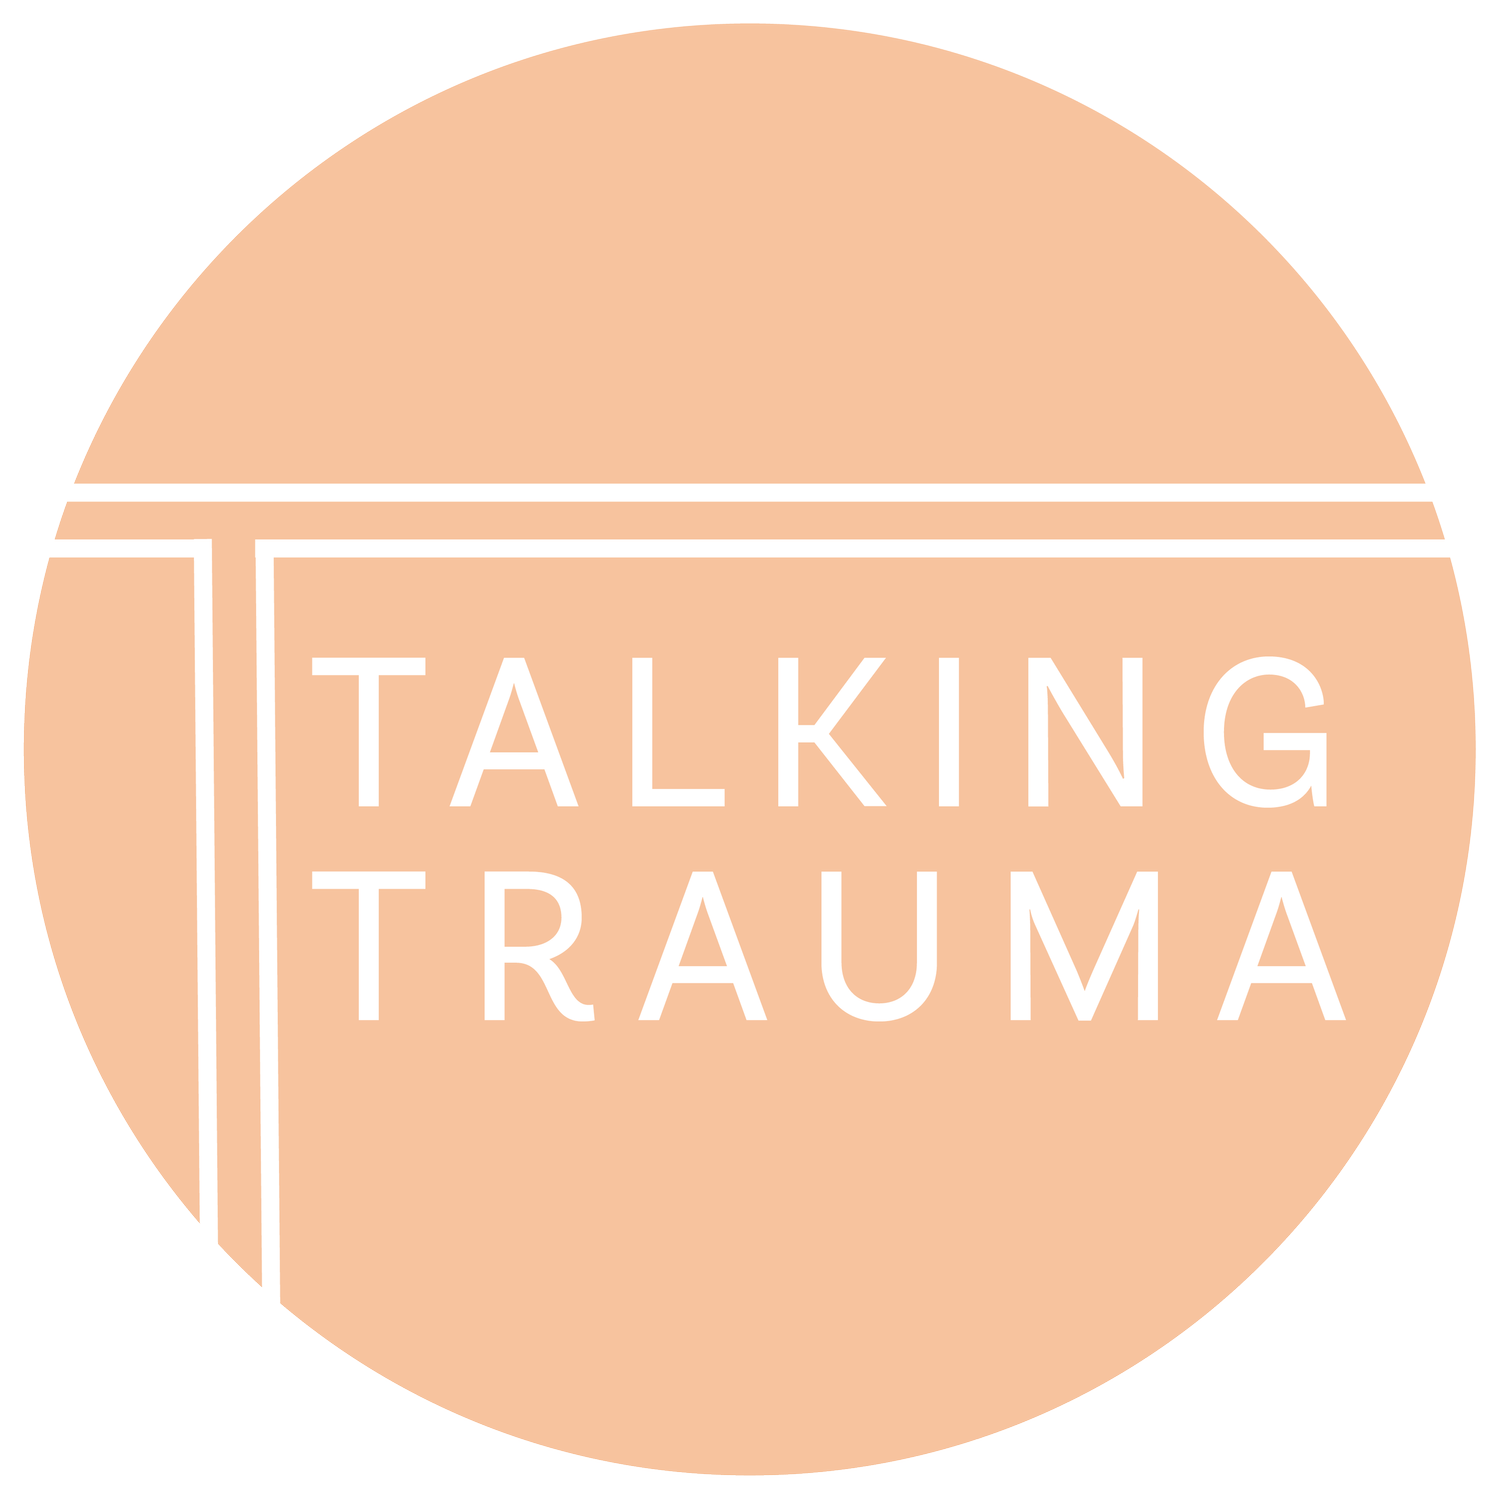 Talking Trauma